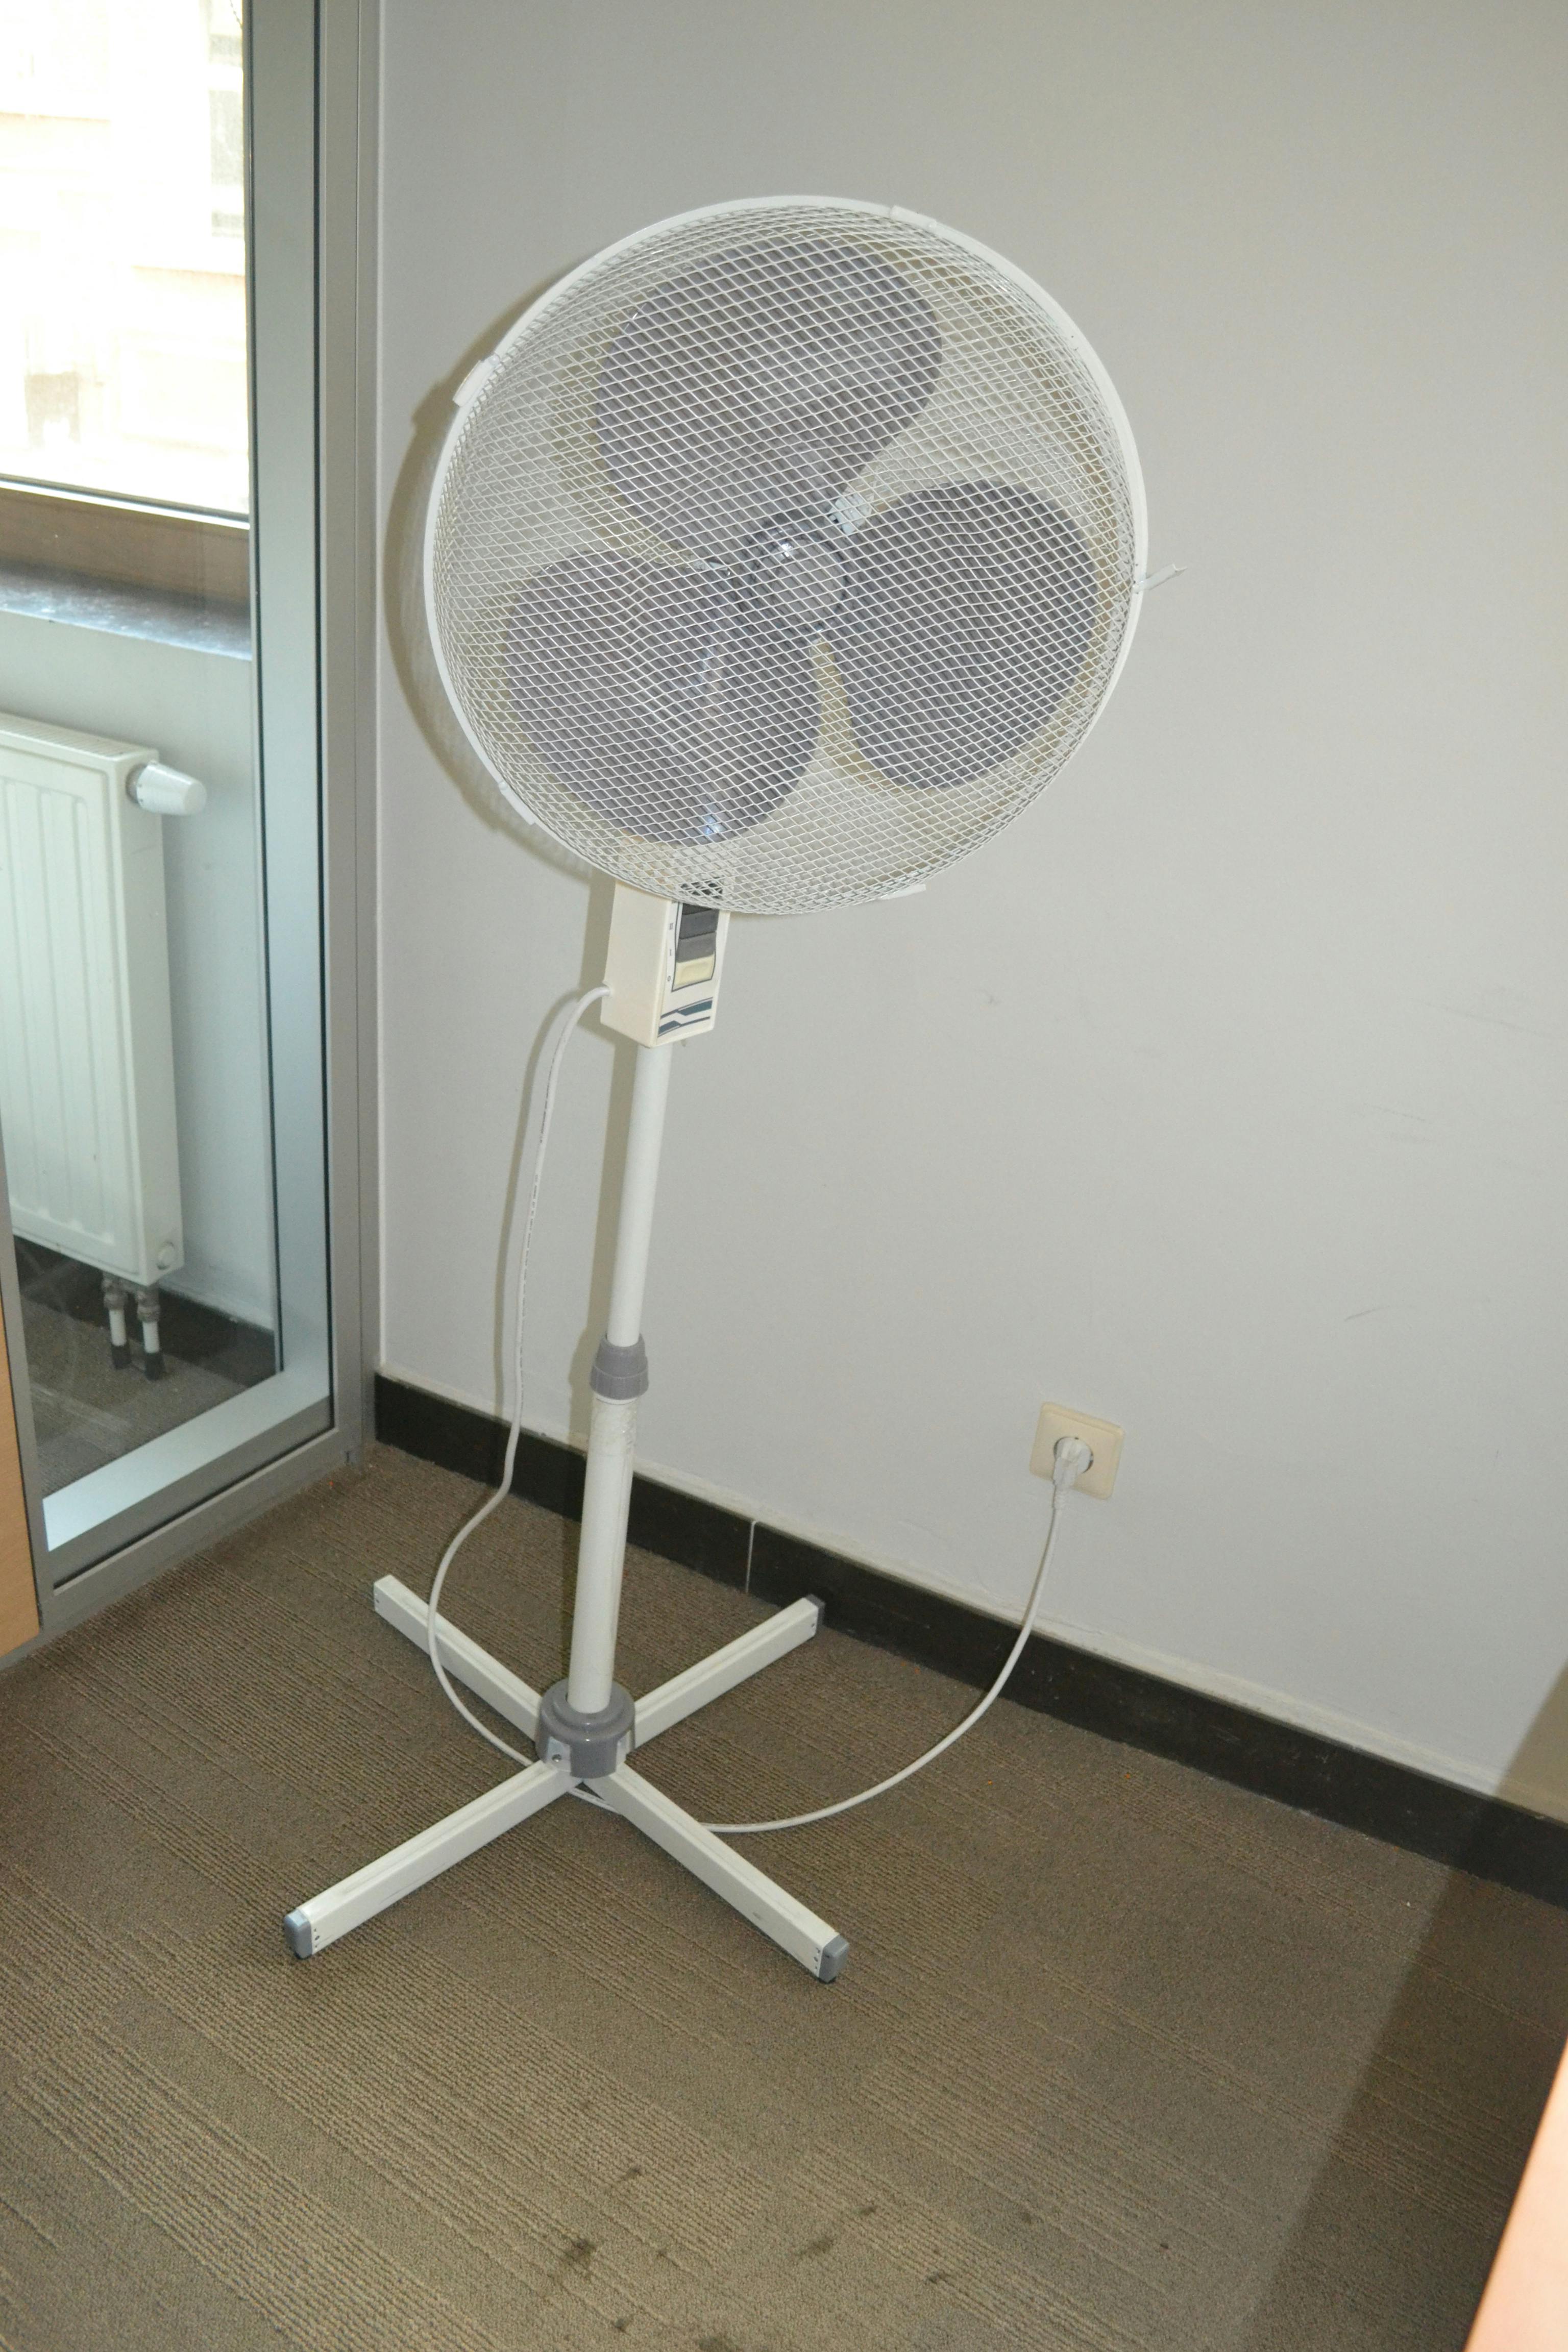 Ventilateur sur pieds / Ventilator Op Poot - Tweedehands kwaliteit "Diverse" - Relieve Furniture - 1